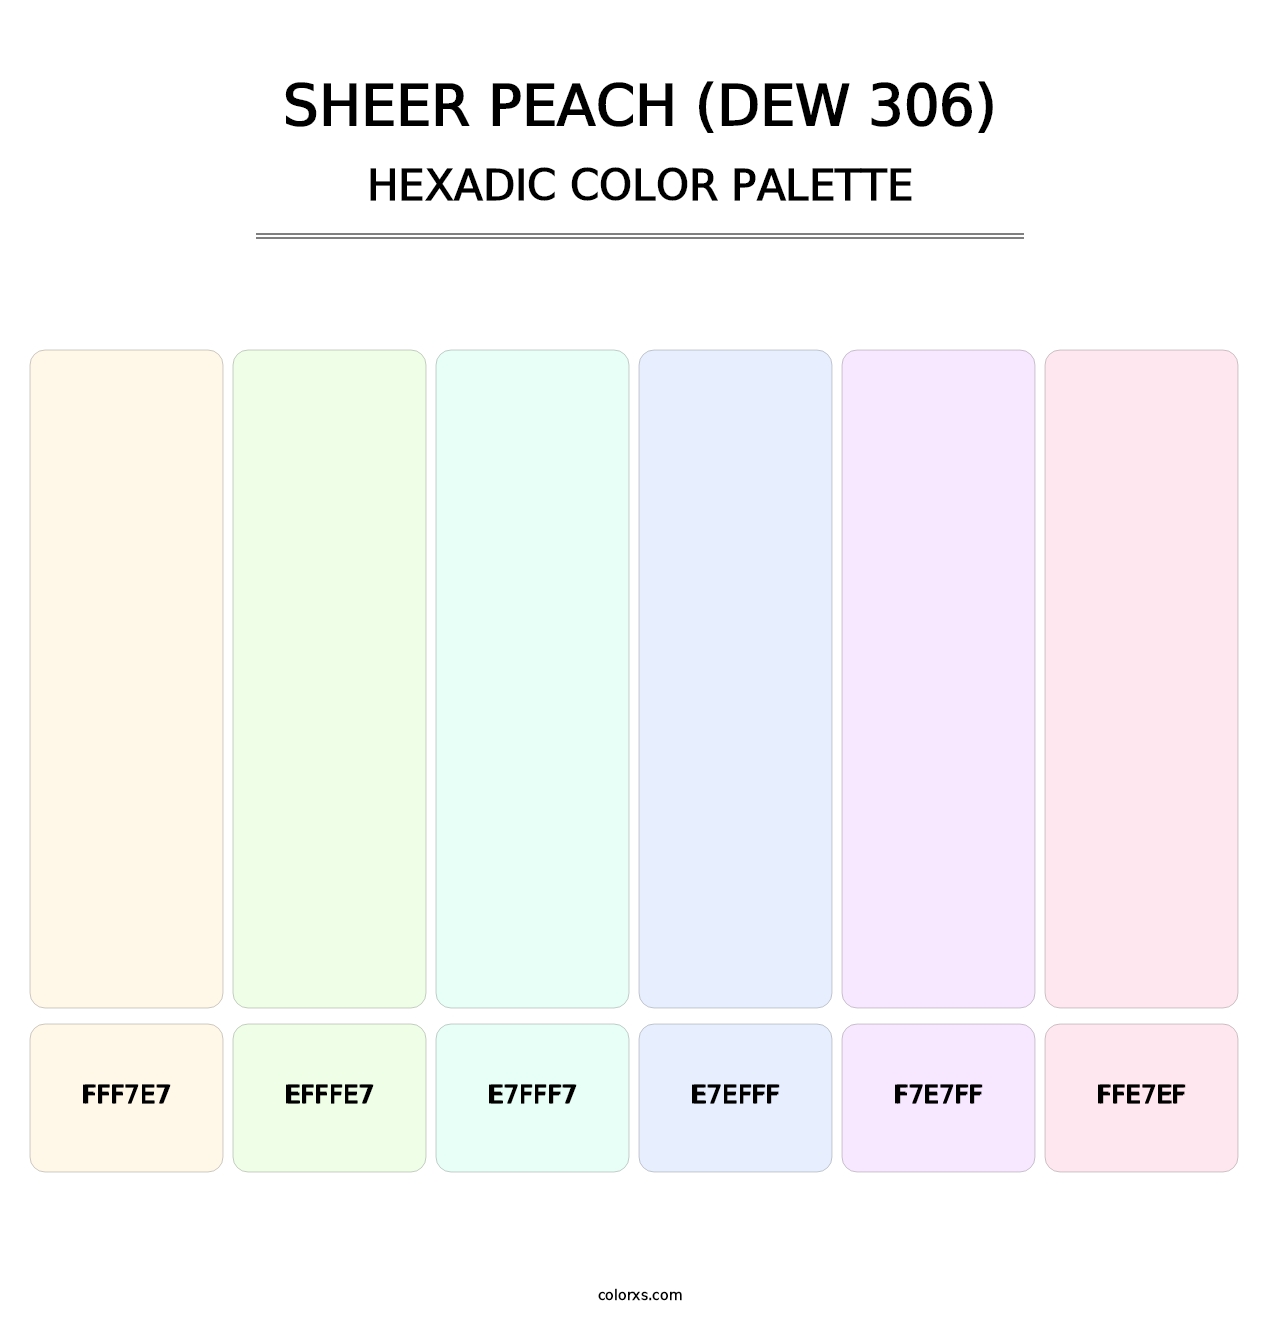 Sheer Peach (DEW 306) - Hexadic Color Palette